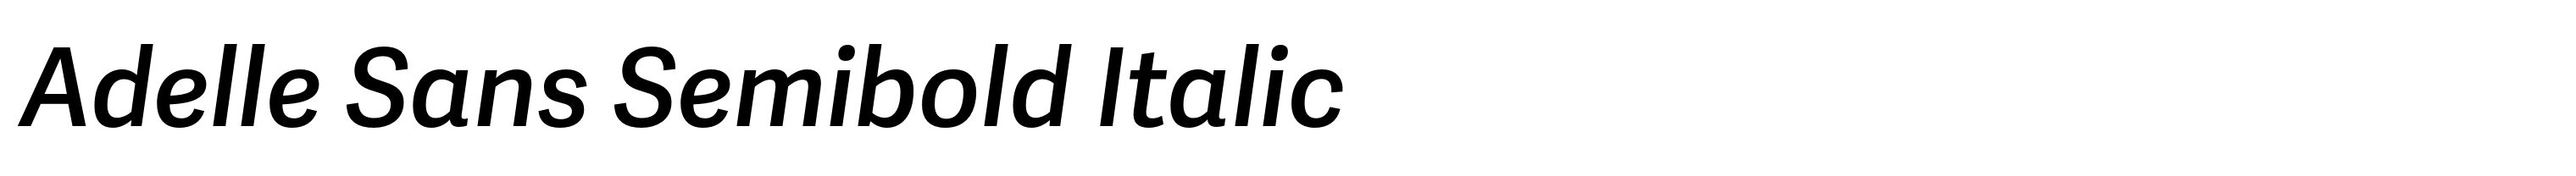 Adelle Sans Semibold Italic